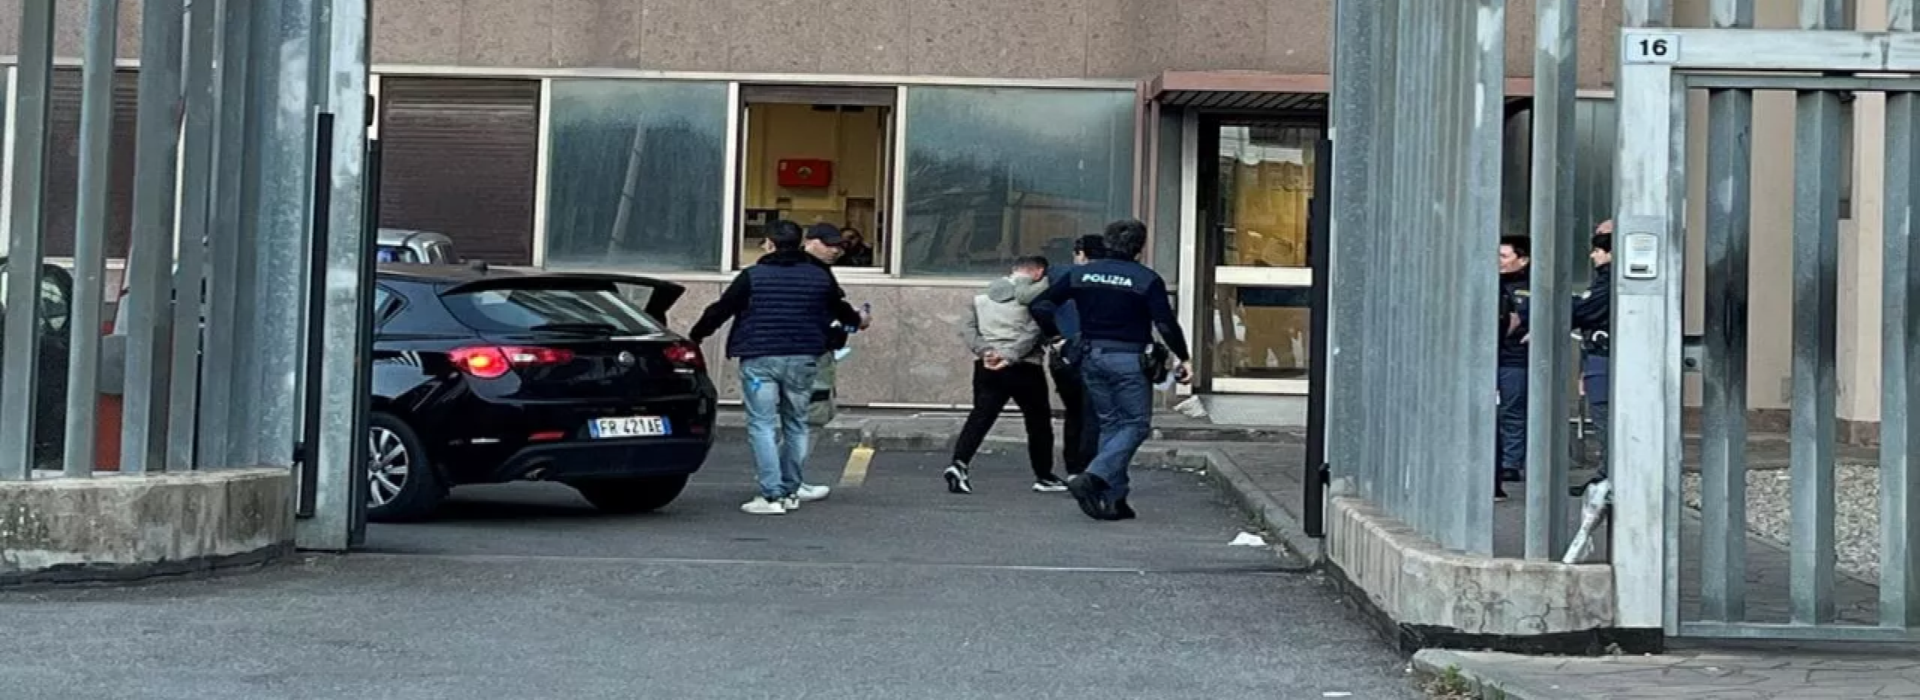 Baris Boyun arrestato a Viterbo: un nuovo capitolo nella saga giudiziaria tra Italia e Turchia